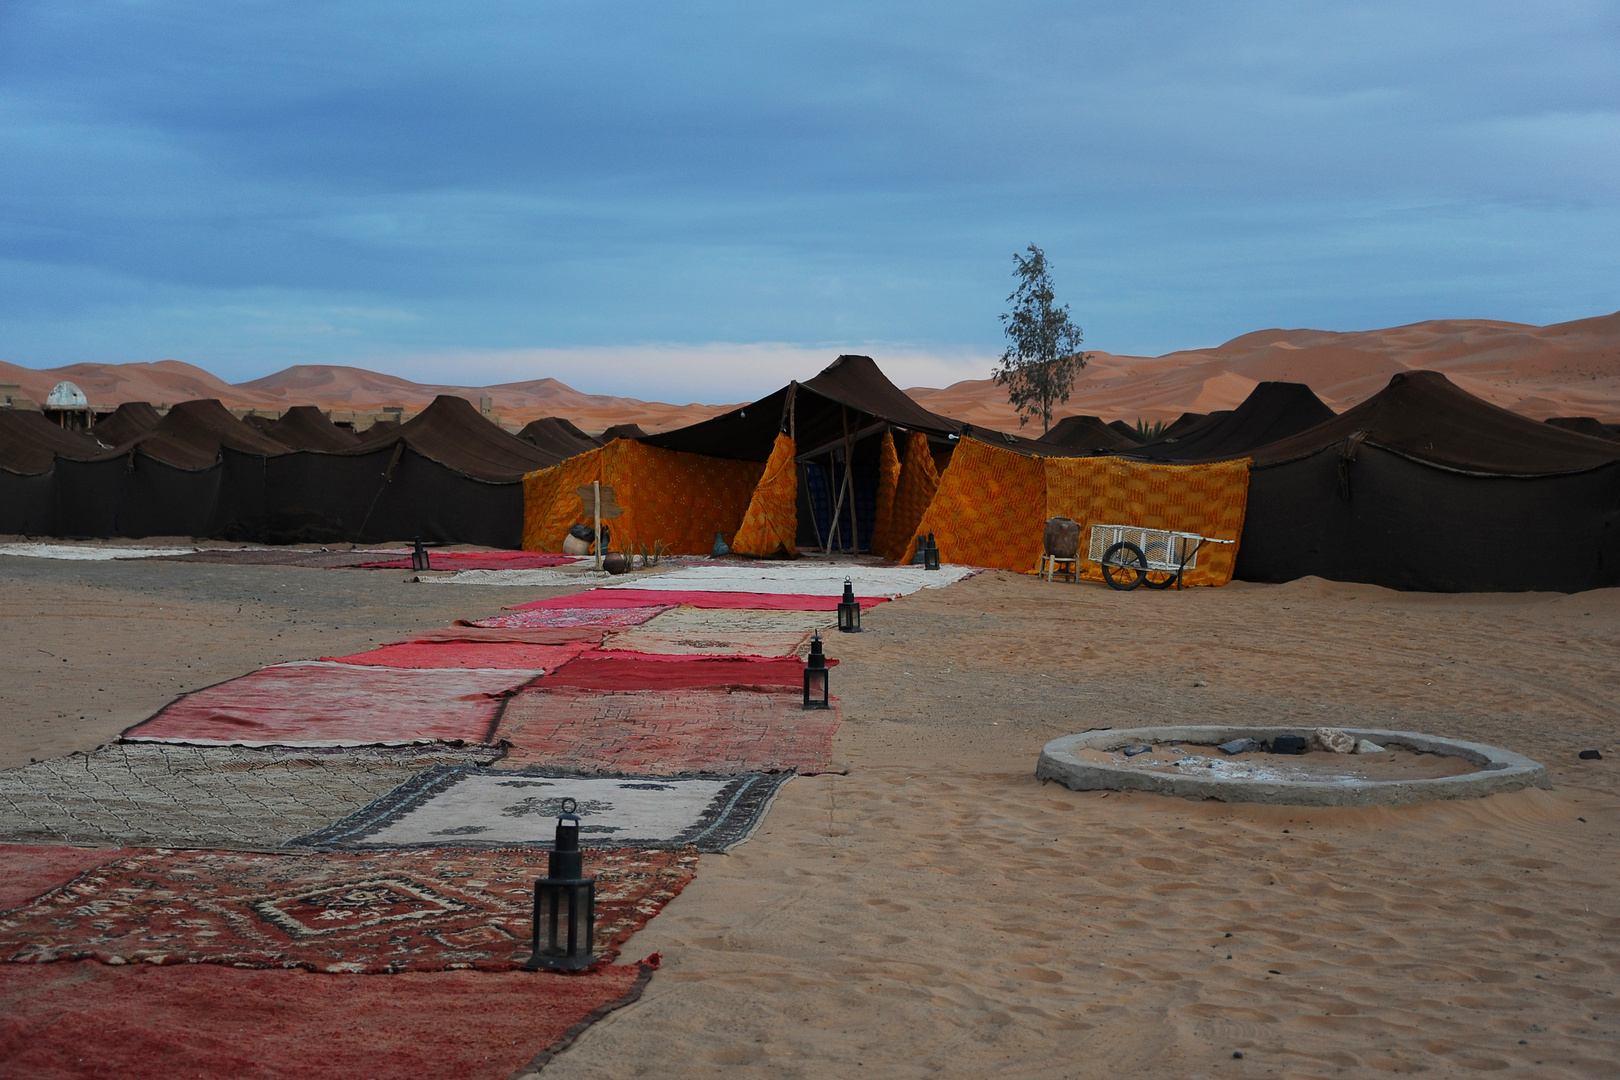 Hotelstadt in der Wüste